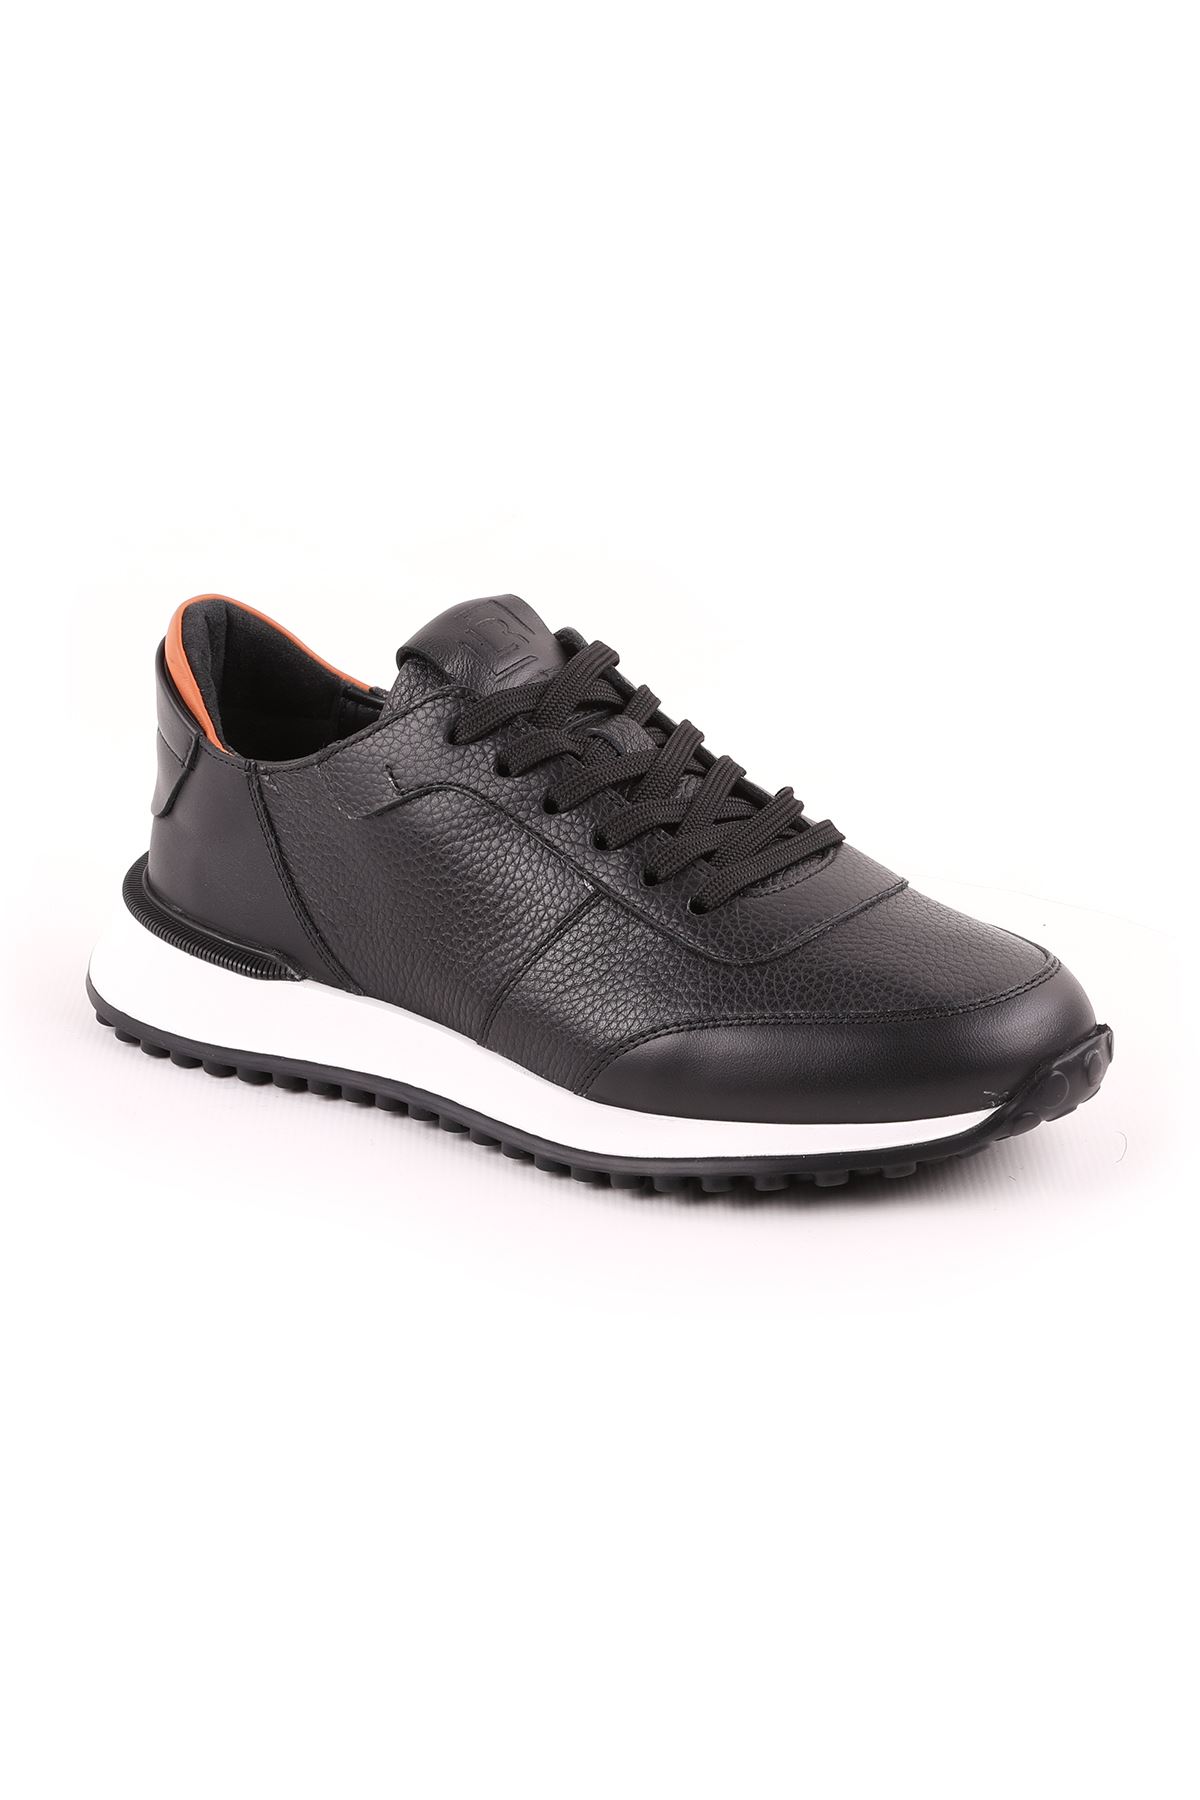 Libero L5144 Siyah Casual Erkek Ayakkabı 